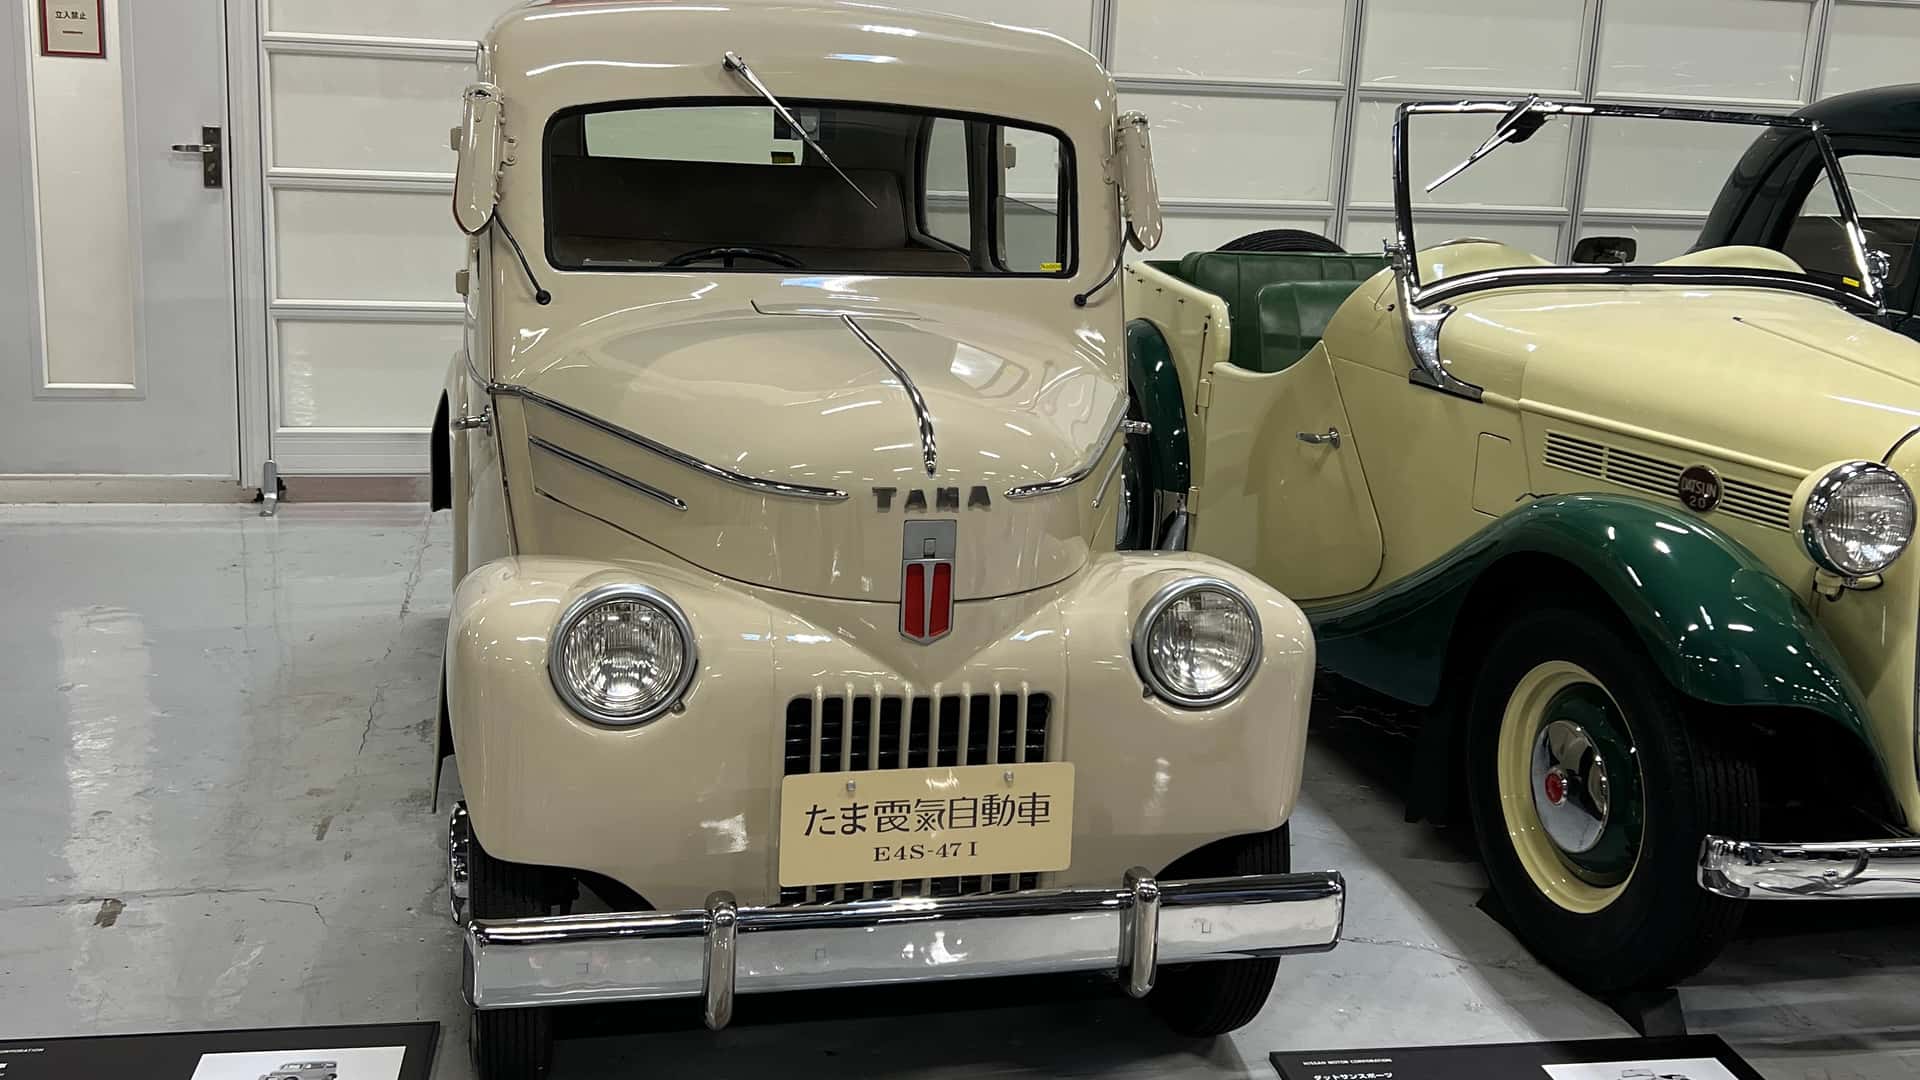 Nissan Tama - Mẫu xe điện đầu tiên của hãng xe Nhật